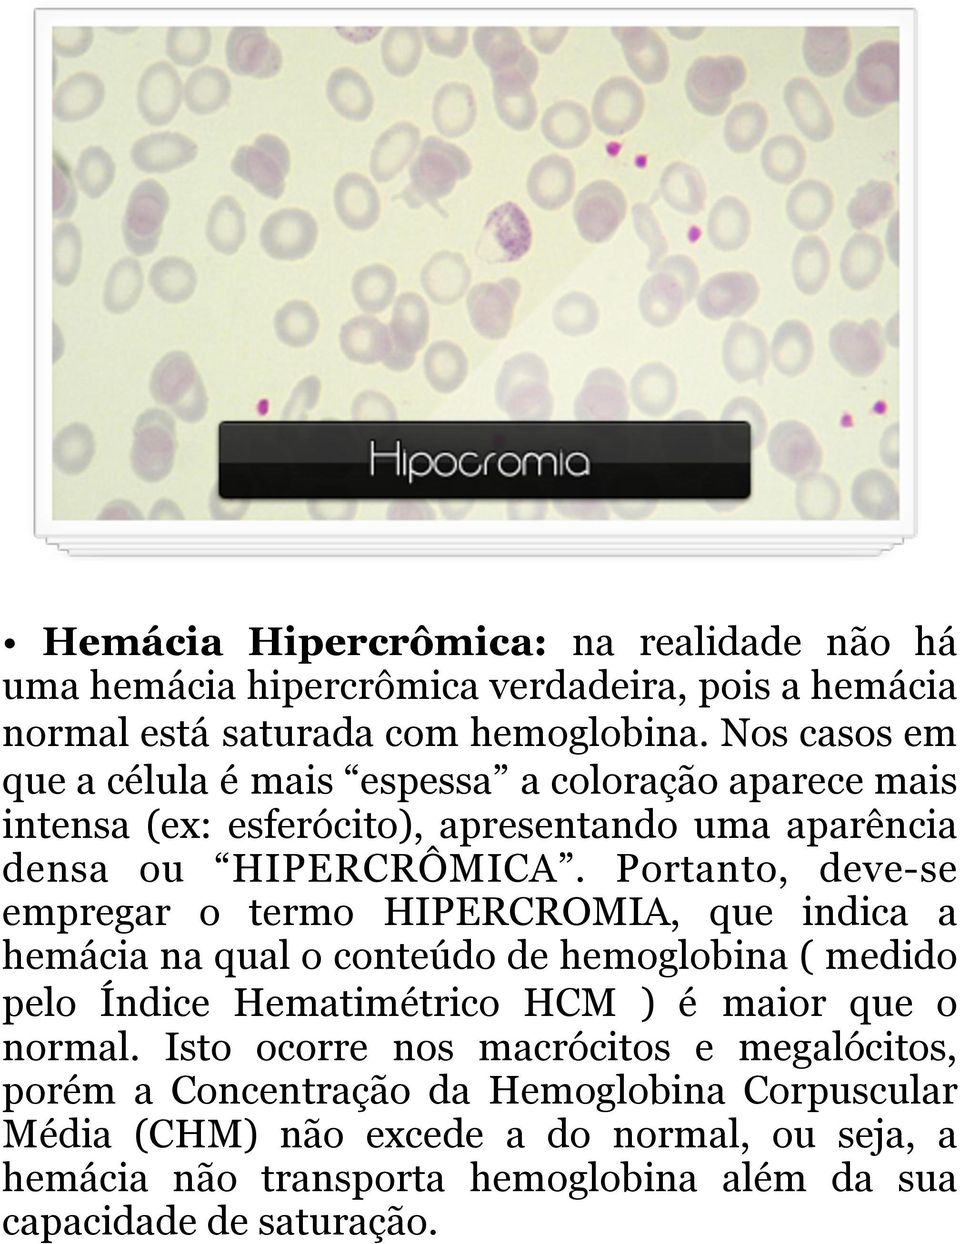 Portanto, deve-se empregar o termo HIPERCROMIA, que indica a hemácia na qual o conteúdo de hemoglobina ( medido pelo Índice Hematimétrico HCM ) é maior que o